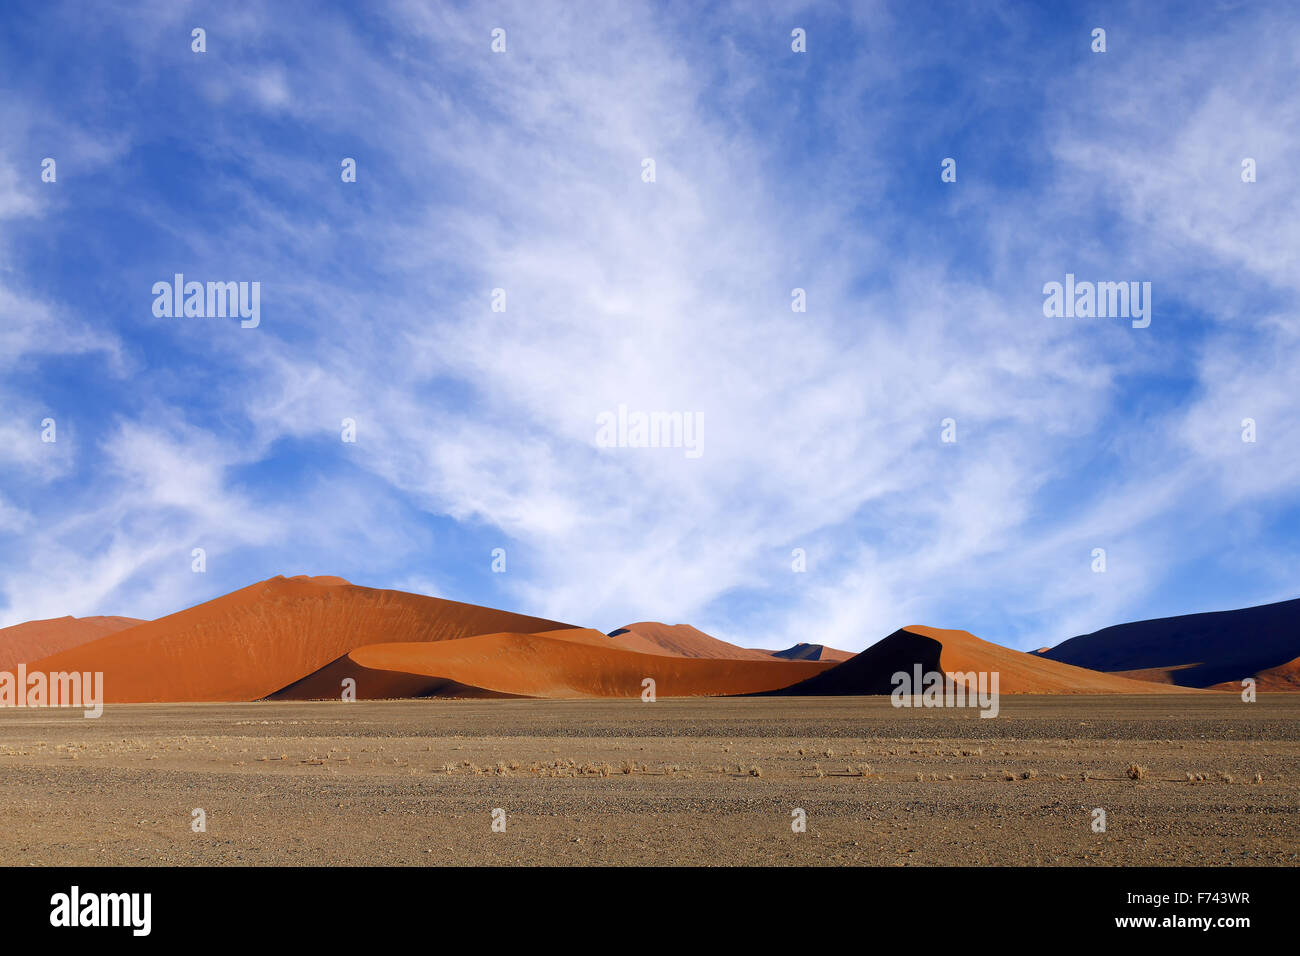 Dunes de sable rouge avant le coucher du soleil nice casting shadows à Sossusvlei, Namibie Banque D'Images